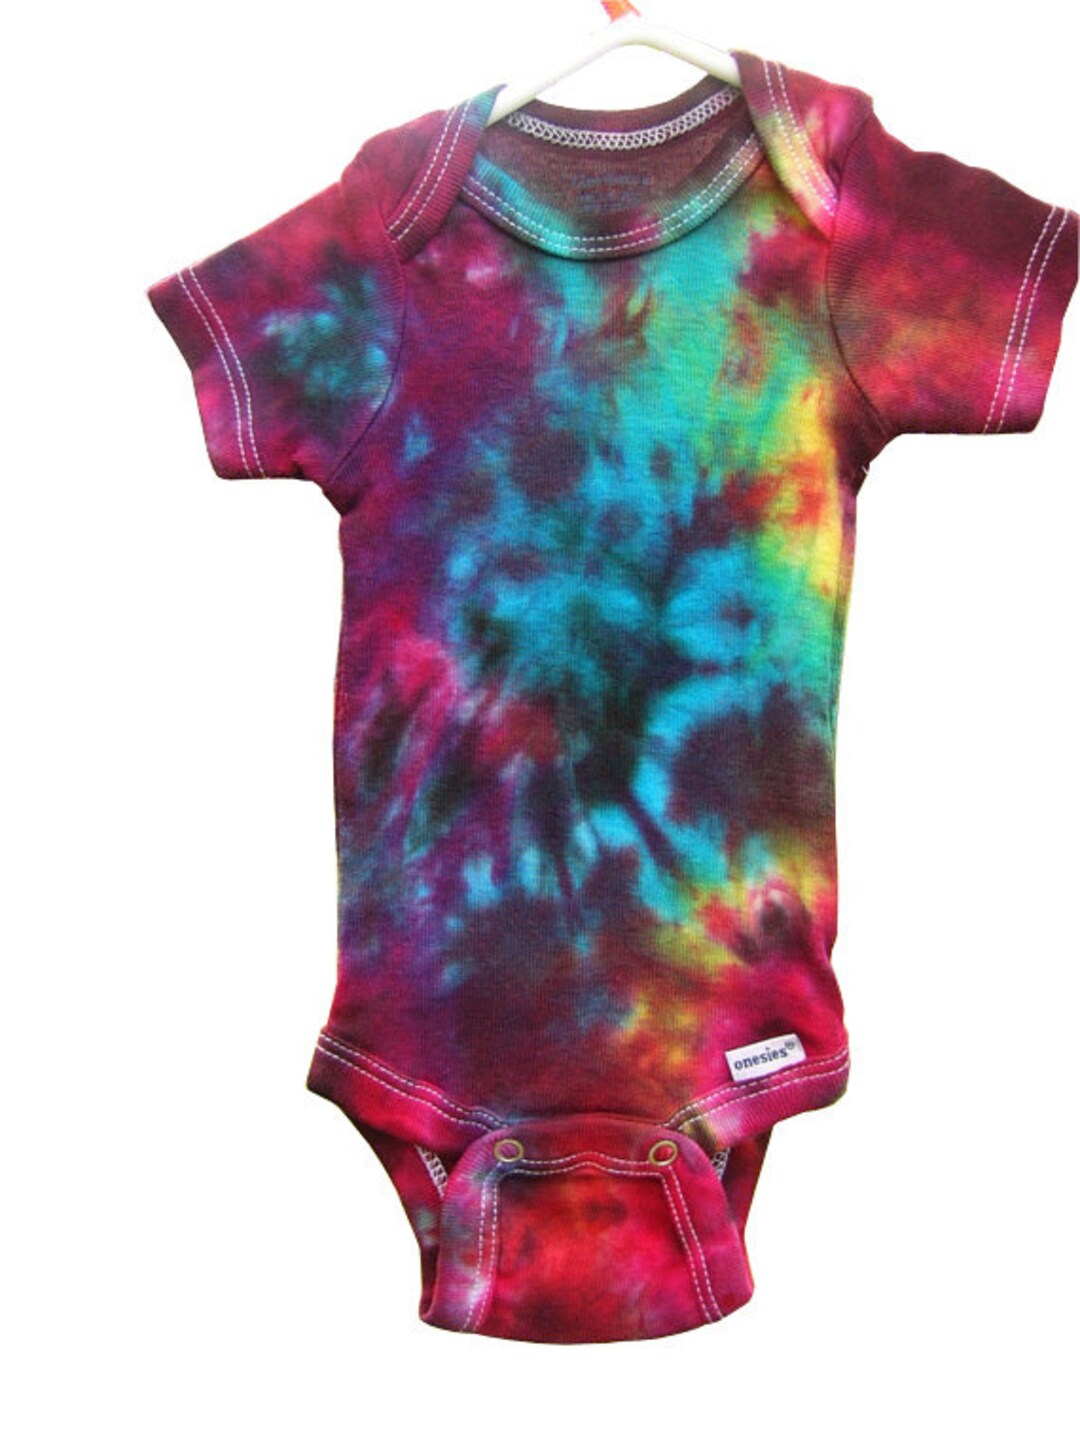 Tie Dye Baby Onesie Galaxy Swirl Girl Boy Clothing Clothes - Etsy